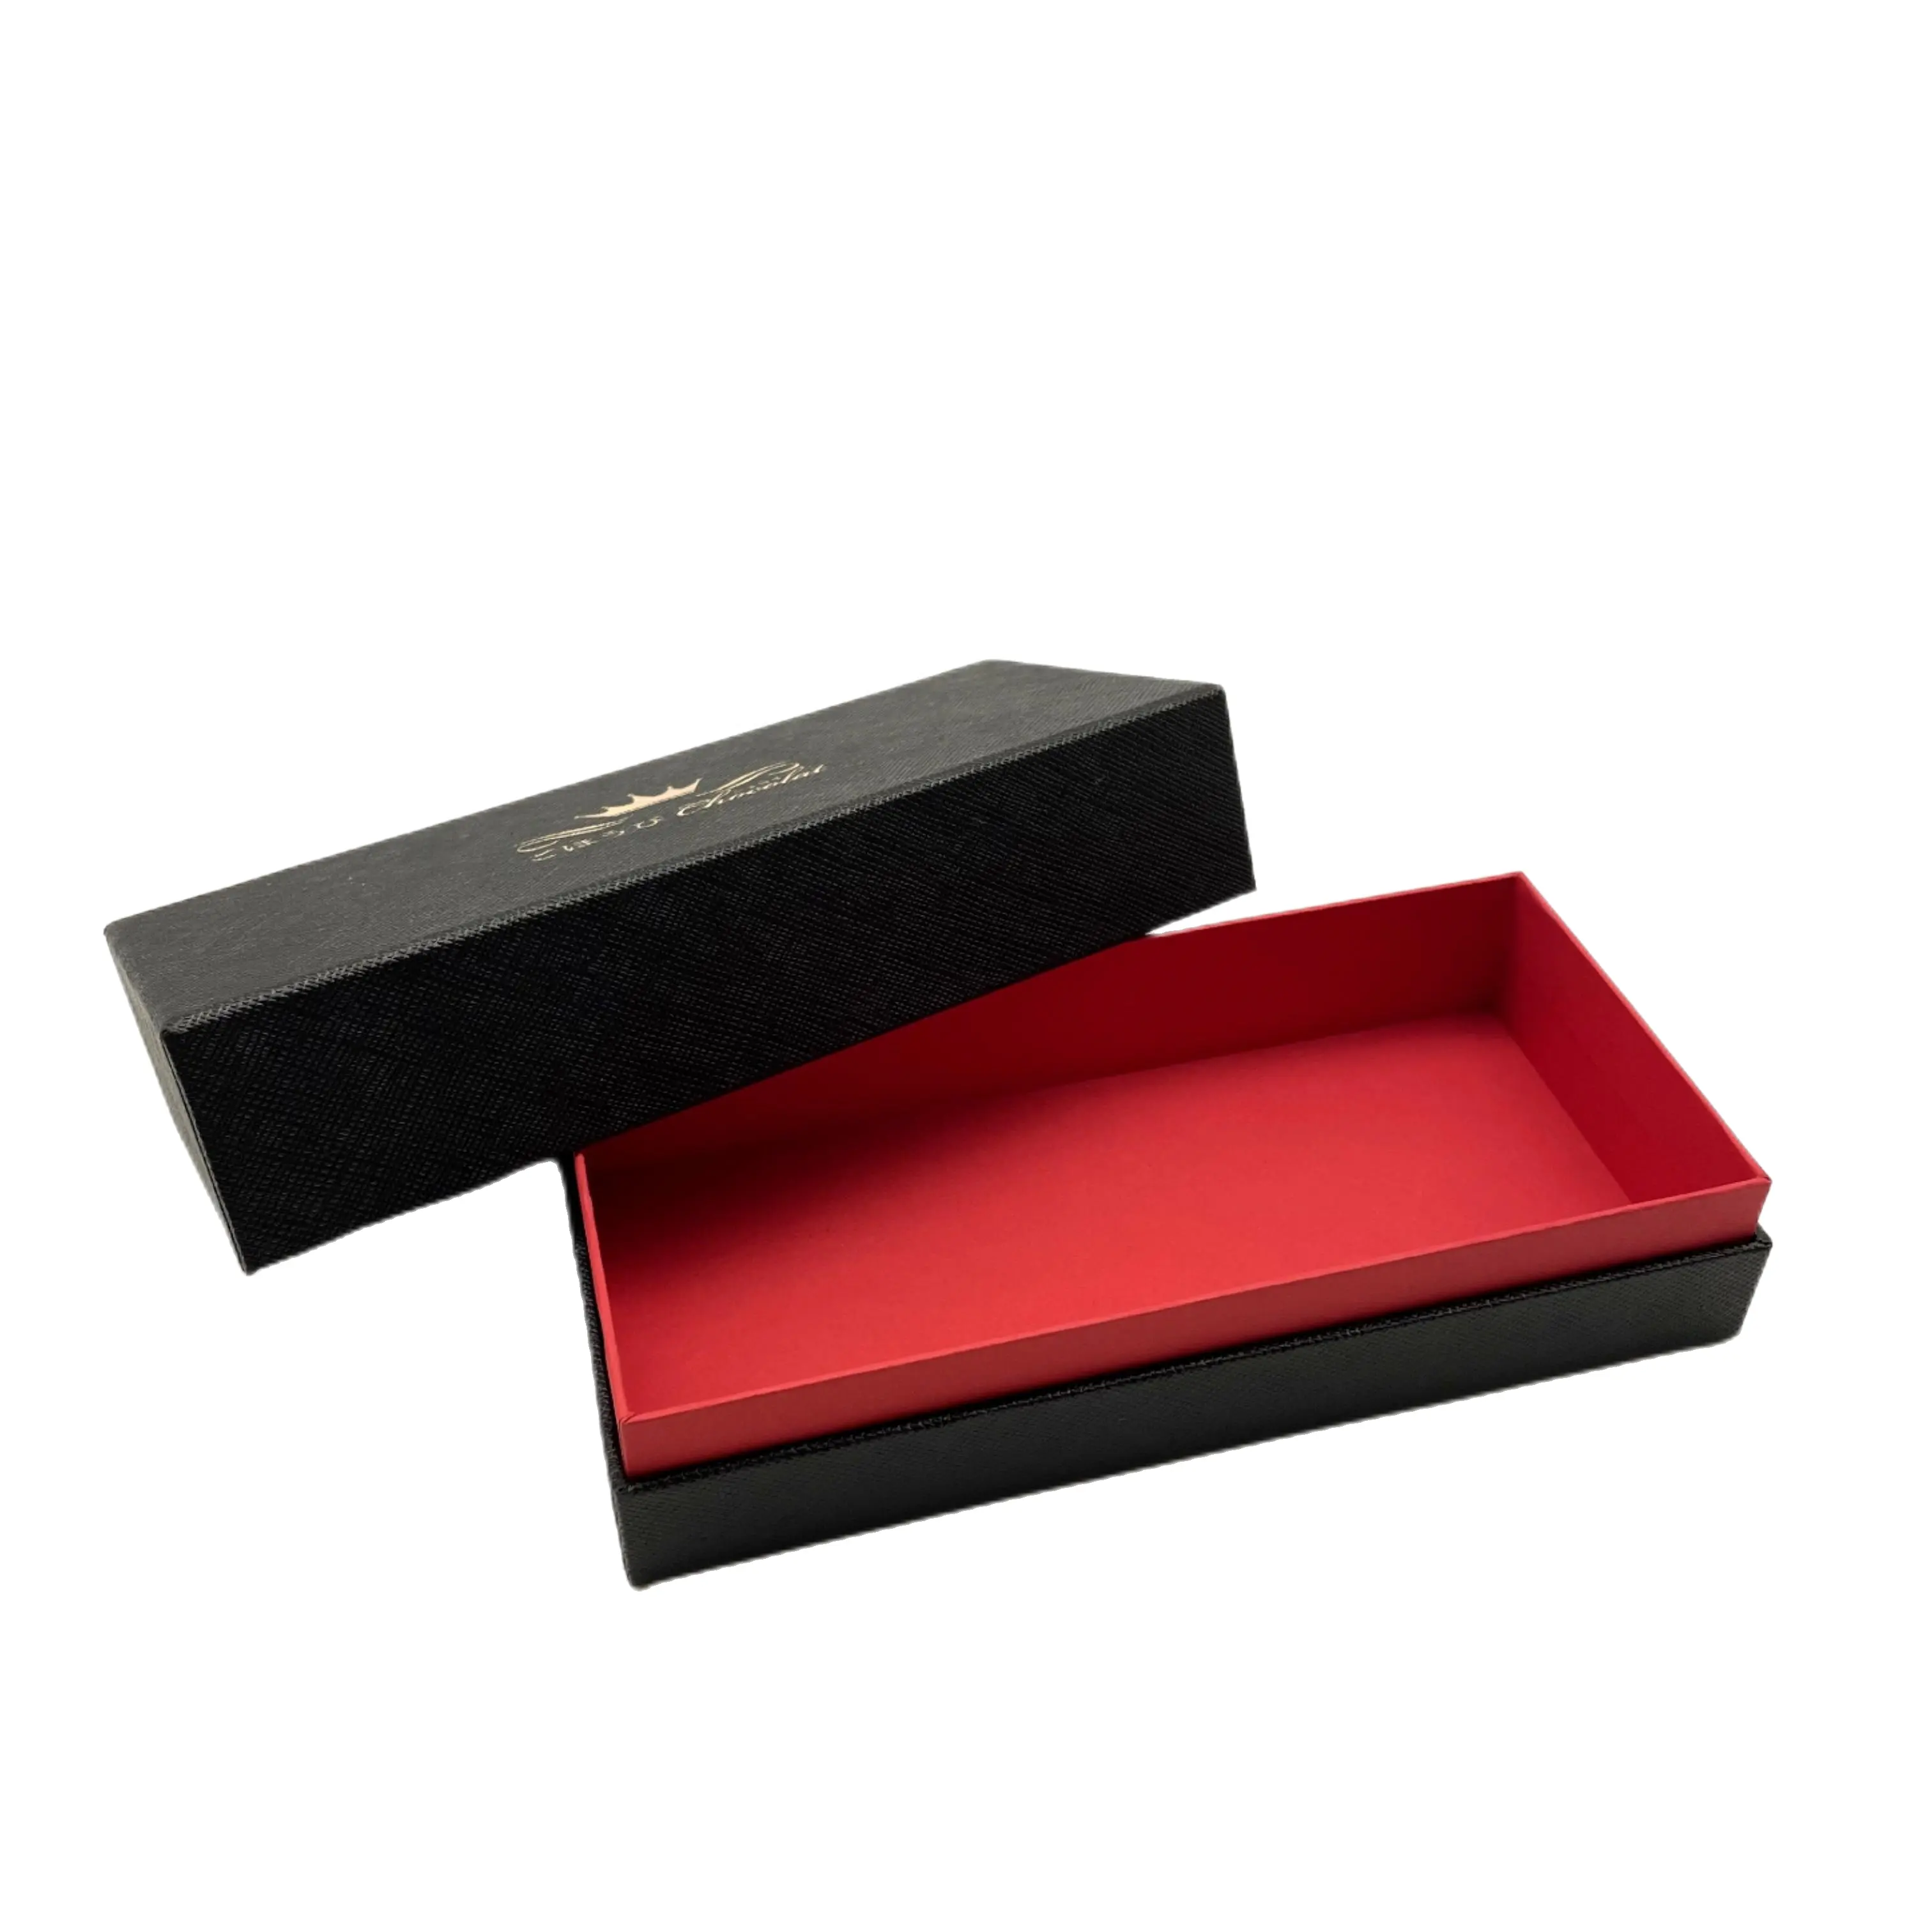 Индивидуальная двухсекцевая жесткая упаковка квадратная текстура картон Верхняя Нижняя коробка Роскошная парфюмерная Косметическая Подарочная коробка с крышкой